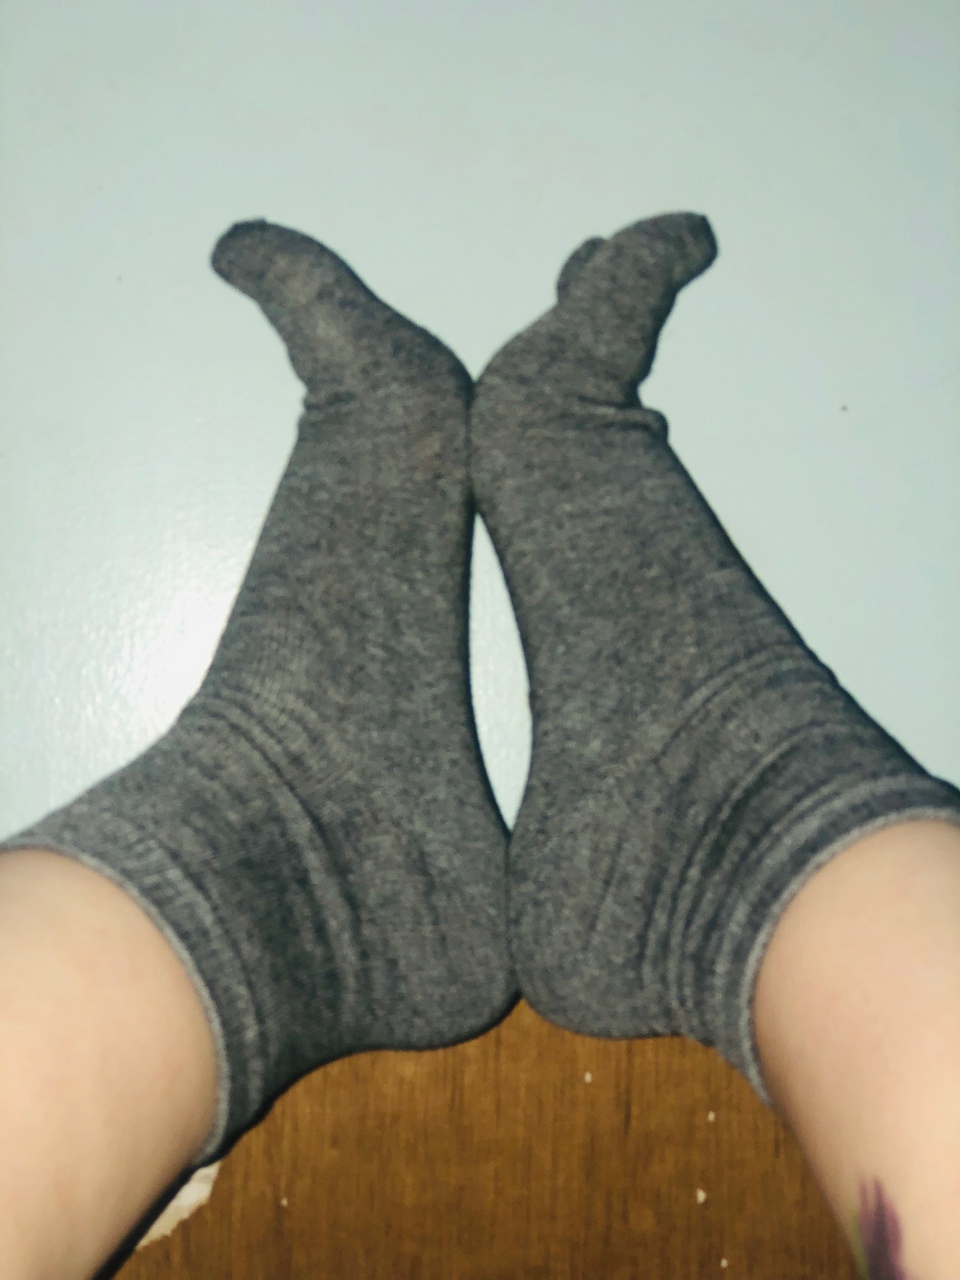 Gingerlovin Toe Socks